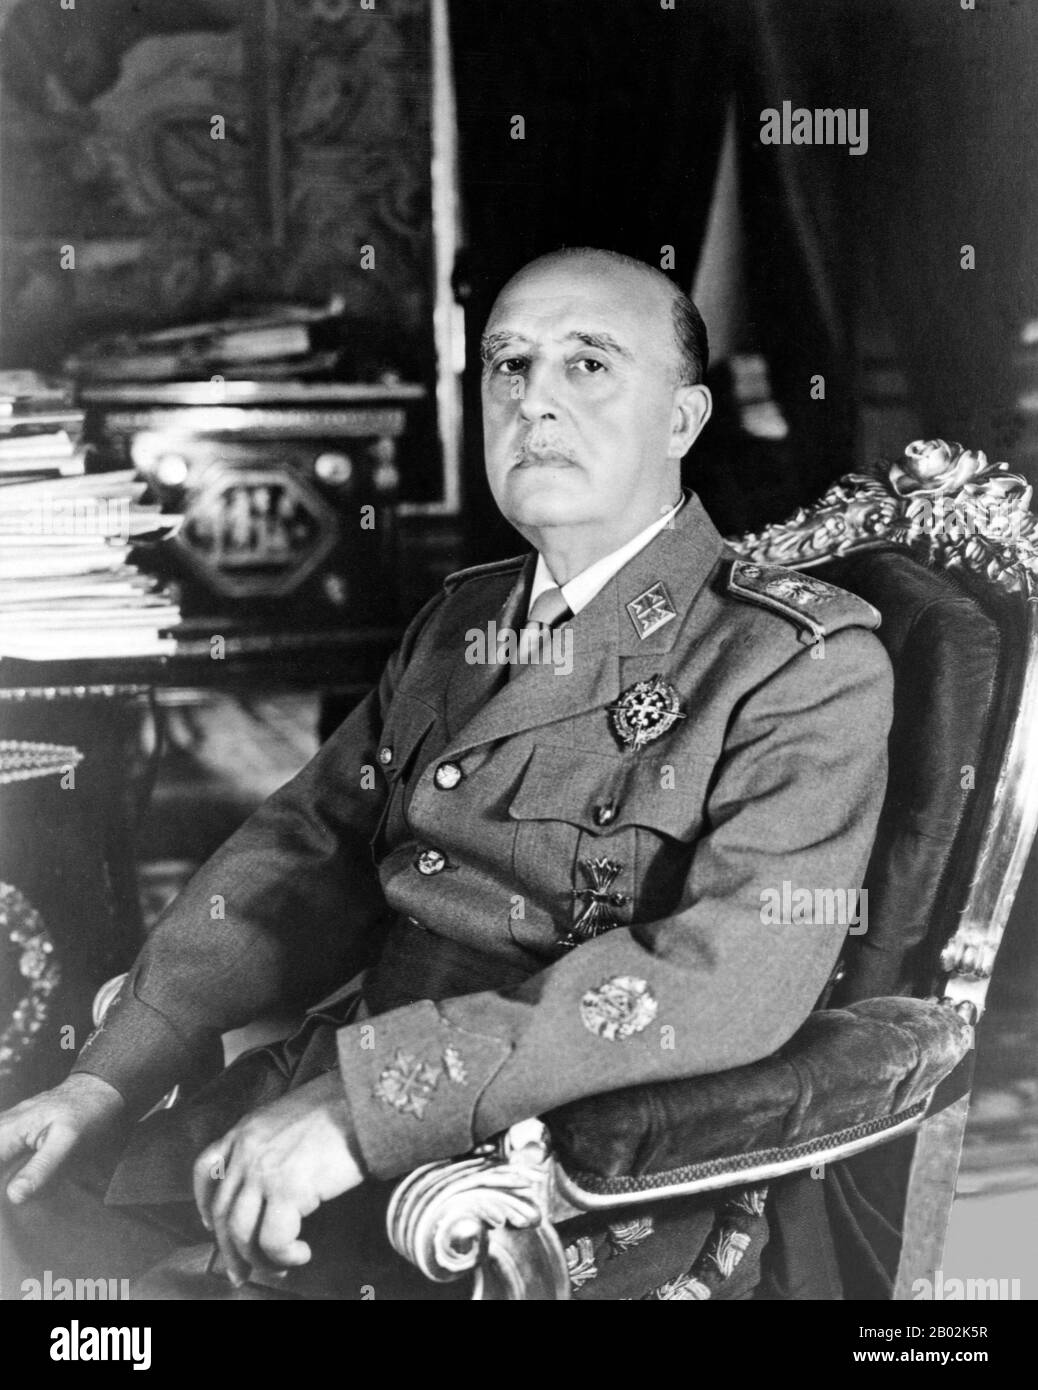 Francisco Franco Bahamonde (4 de diciembre de 1892 – 20 de noviembre de  1975) fue el dictador de España desde 1939 hasta su muerte en 1975.  Conservador, se sorprendió cuando la monarquía